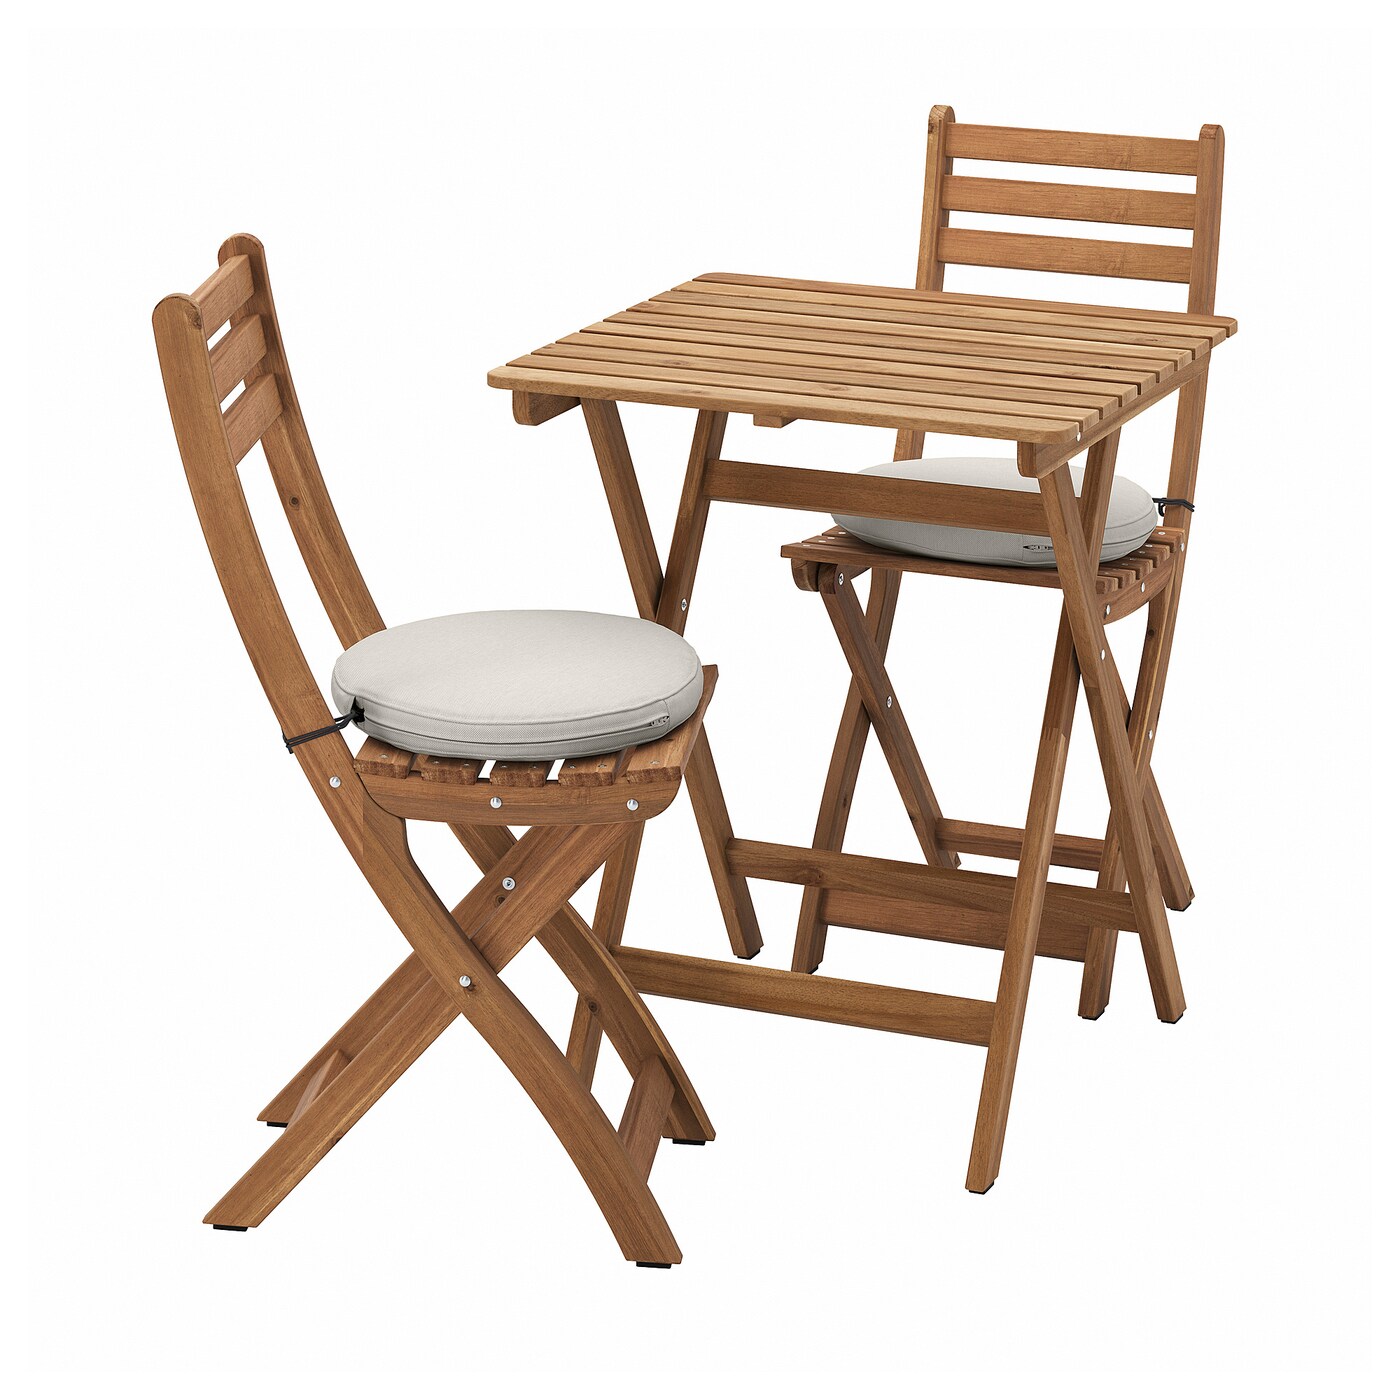 Садовый стол и 2 стула - ASKHOLMEN IKEA/ АСКХОЛЬМЕН ИКЕА,  62х60 см, коричневый